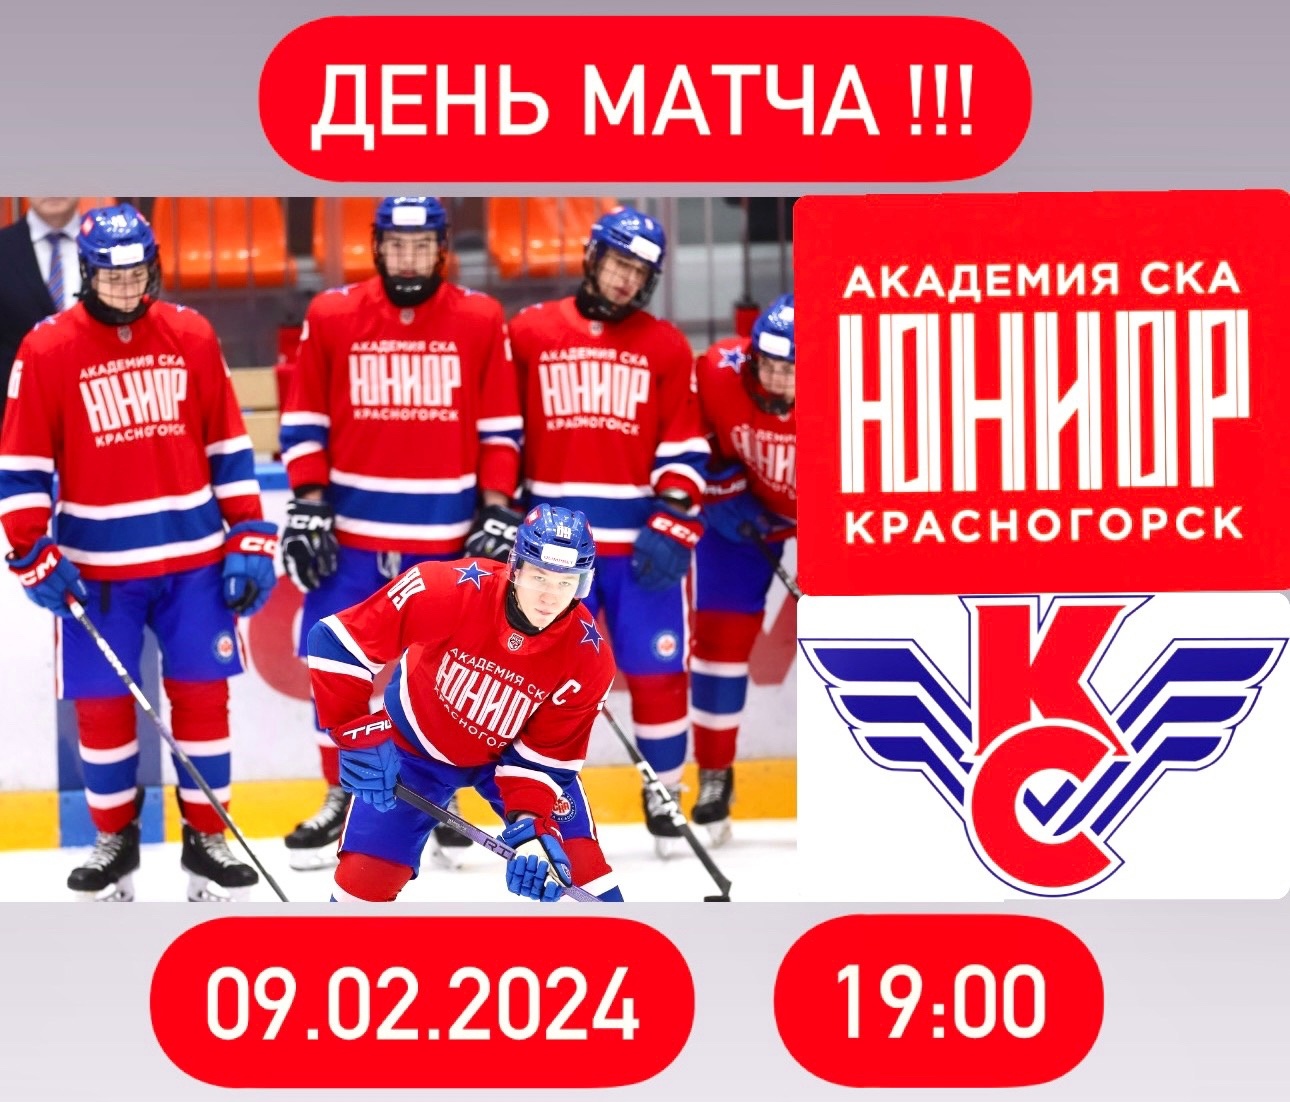 Матч между командами «Академия СКА-Юриор» и «Крылья Советов».